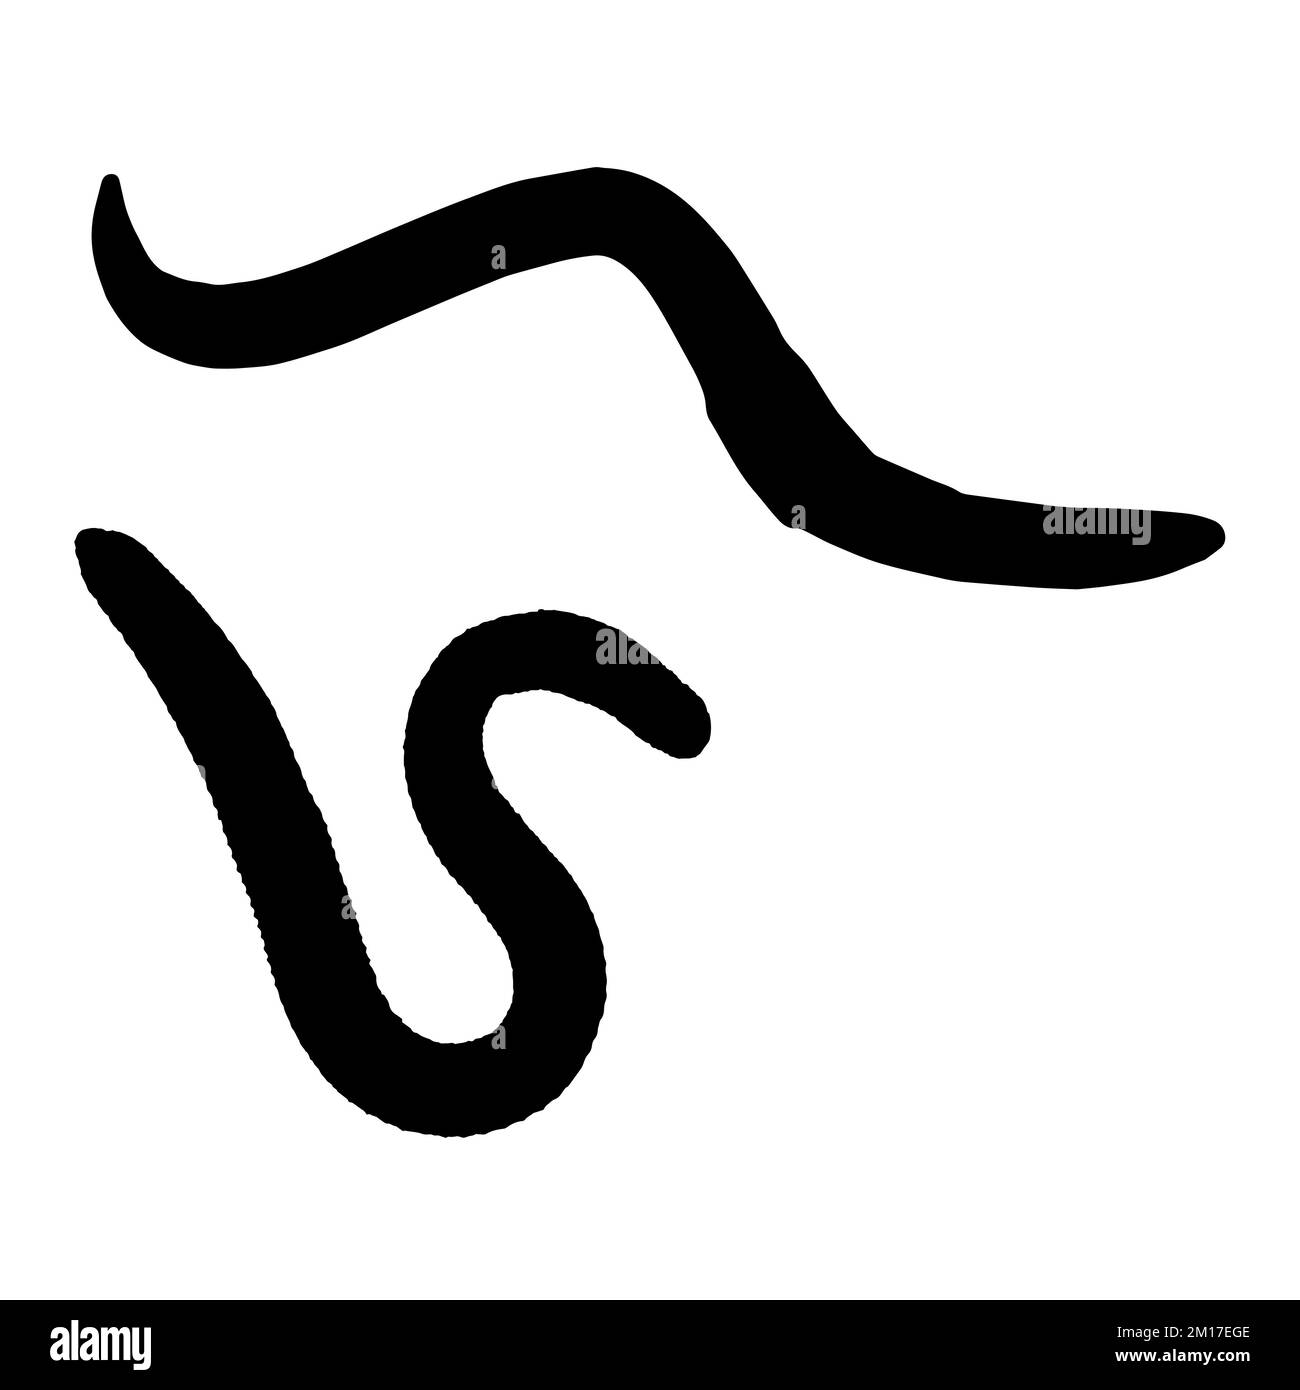 Vector Art of Earthworm Silhouette Stock Vector